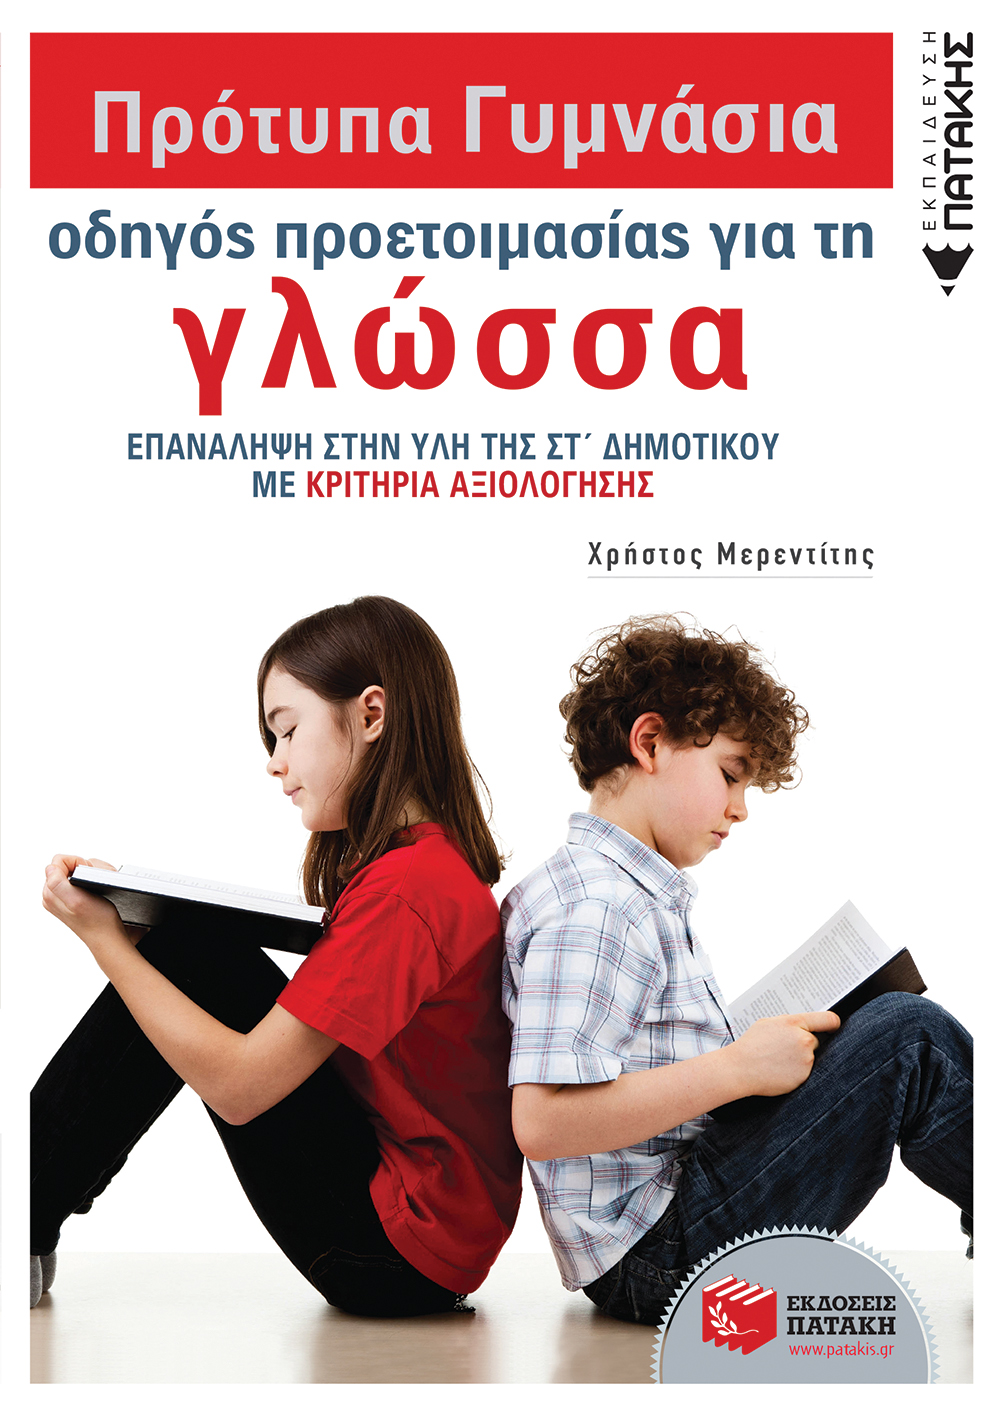 Πρότυπα Γυμνάσια - Οδηγός προετοιμασίας για τη Γλώσσα (e-book / pdf)